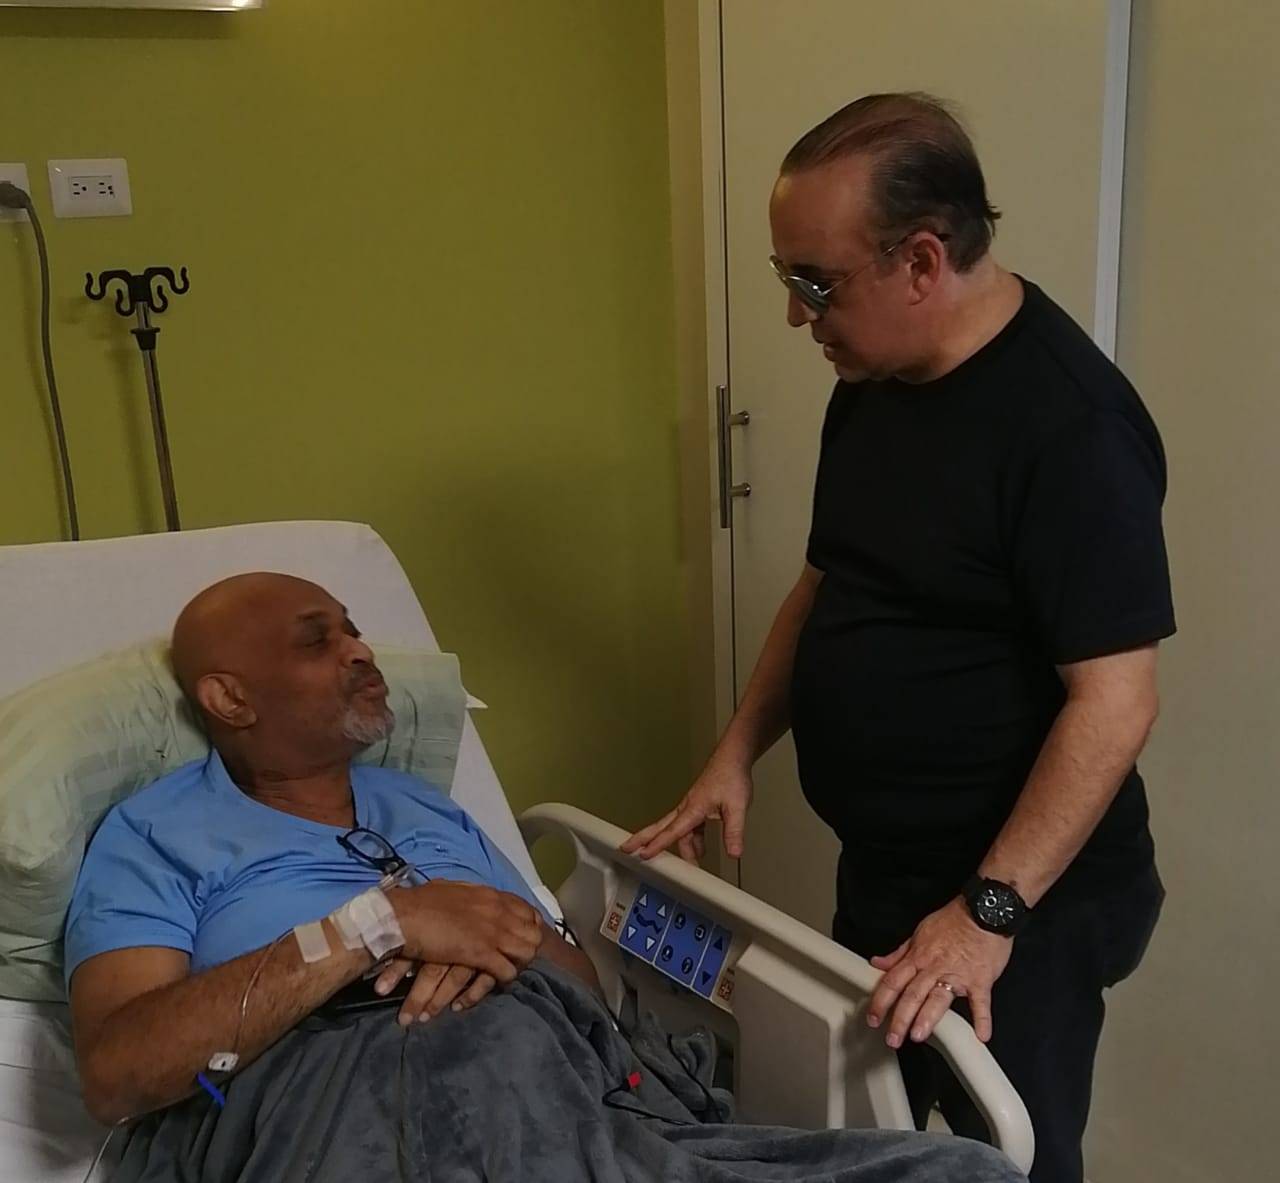 Quique visita a Nelson Javier “El Cocodrilo” en la clínica tras amputarle pie por complicaciones con la diabetes